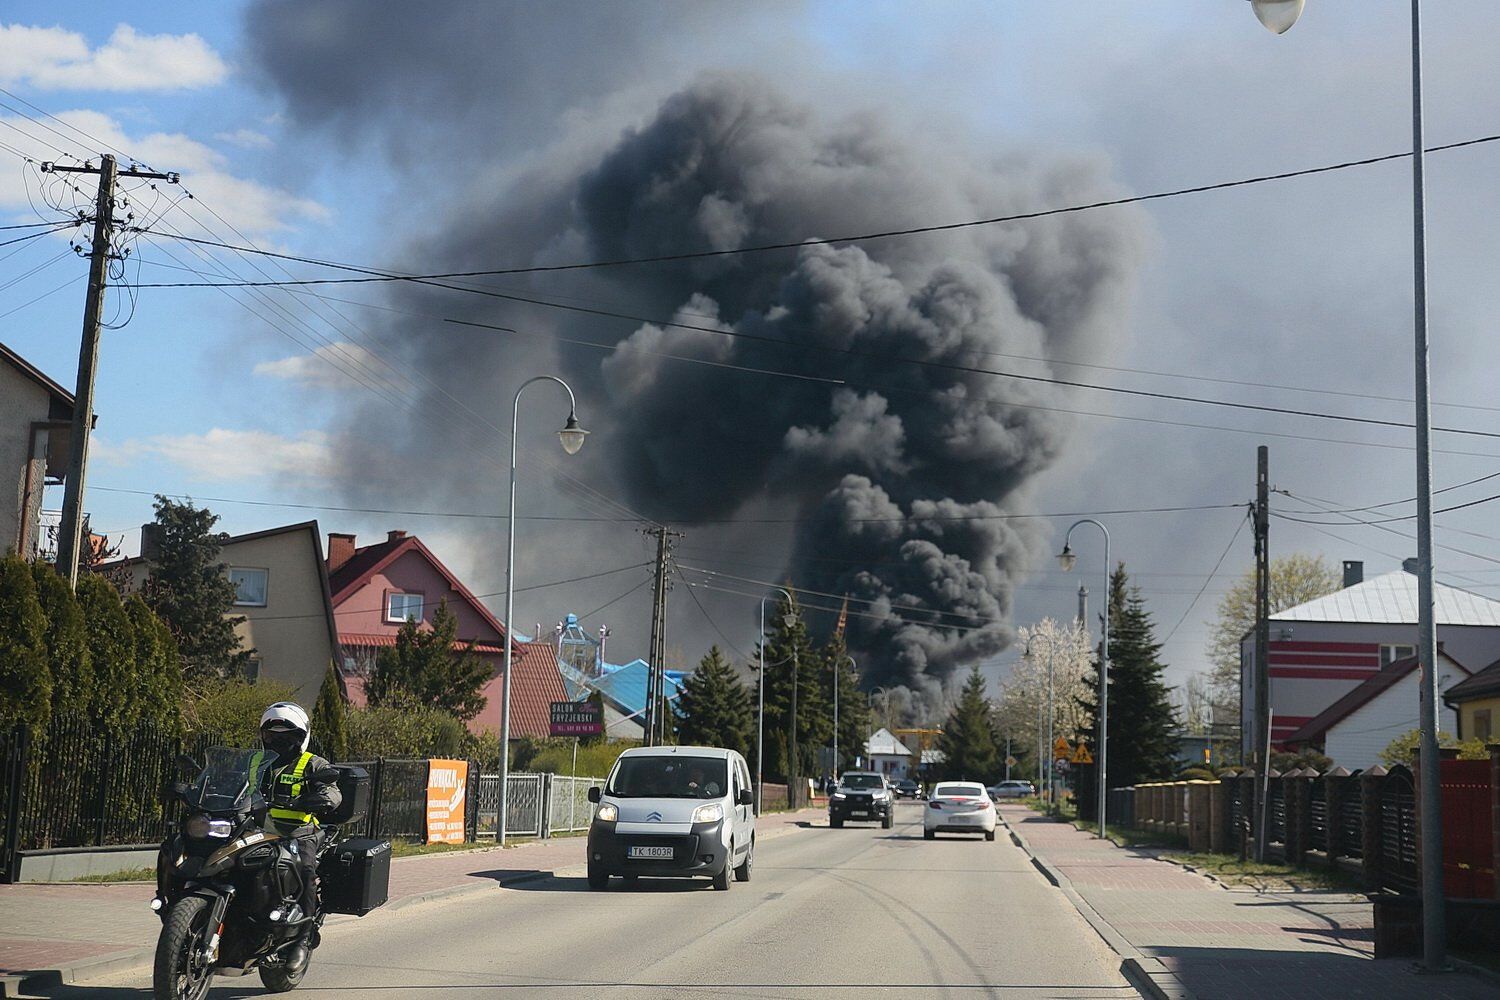 У Польщі прогримів вибух на хімзаводі: місто затягнуло чорним димом. Фото і відео